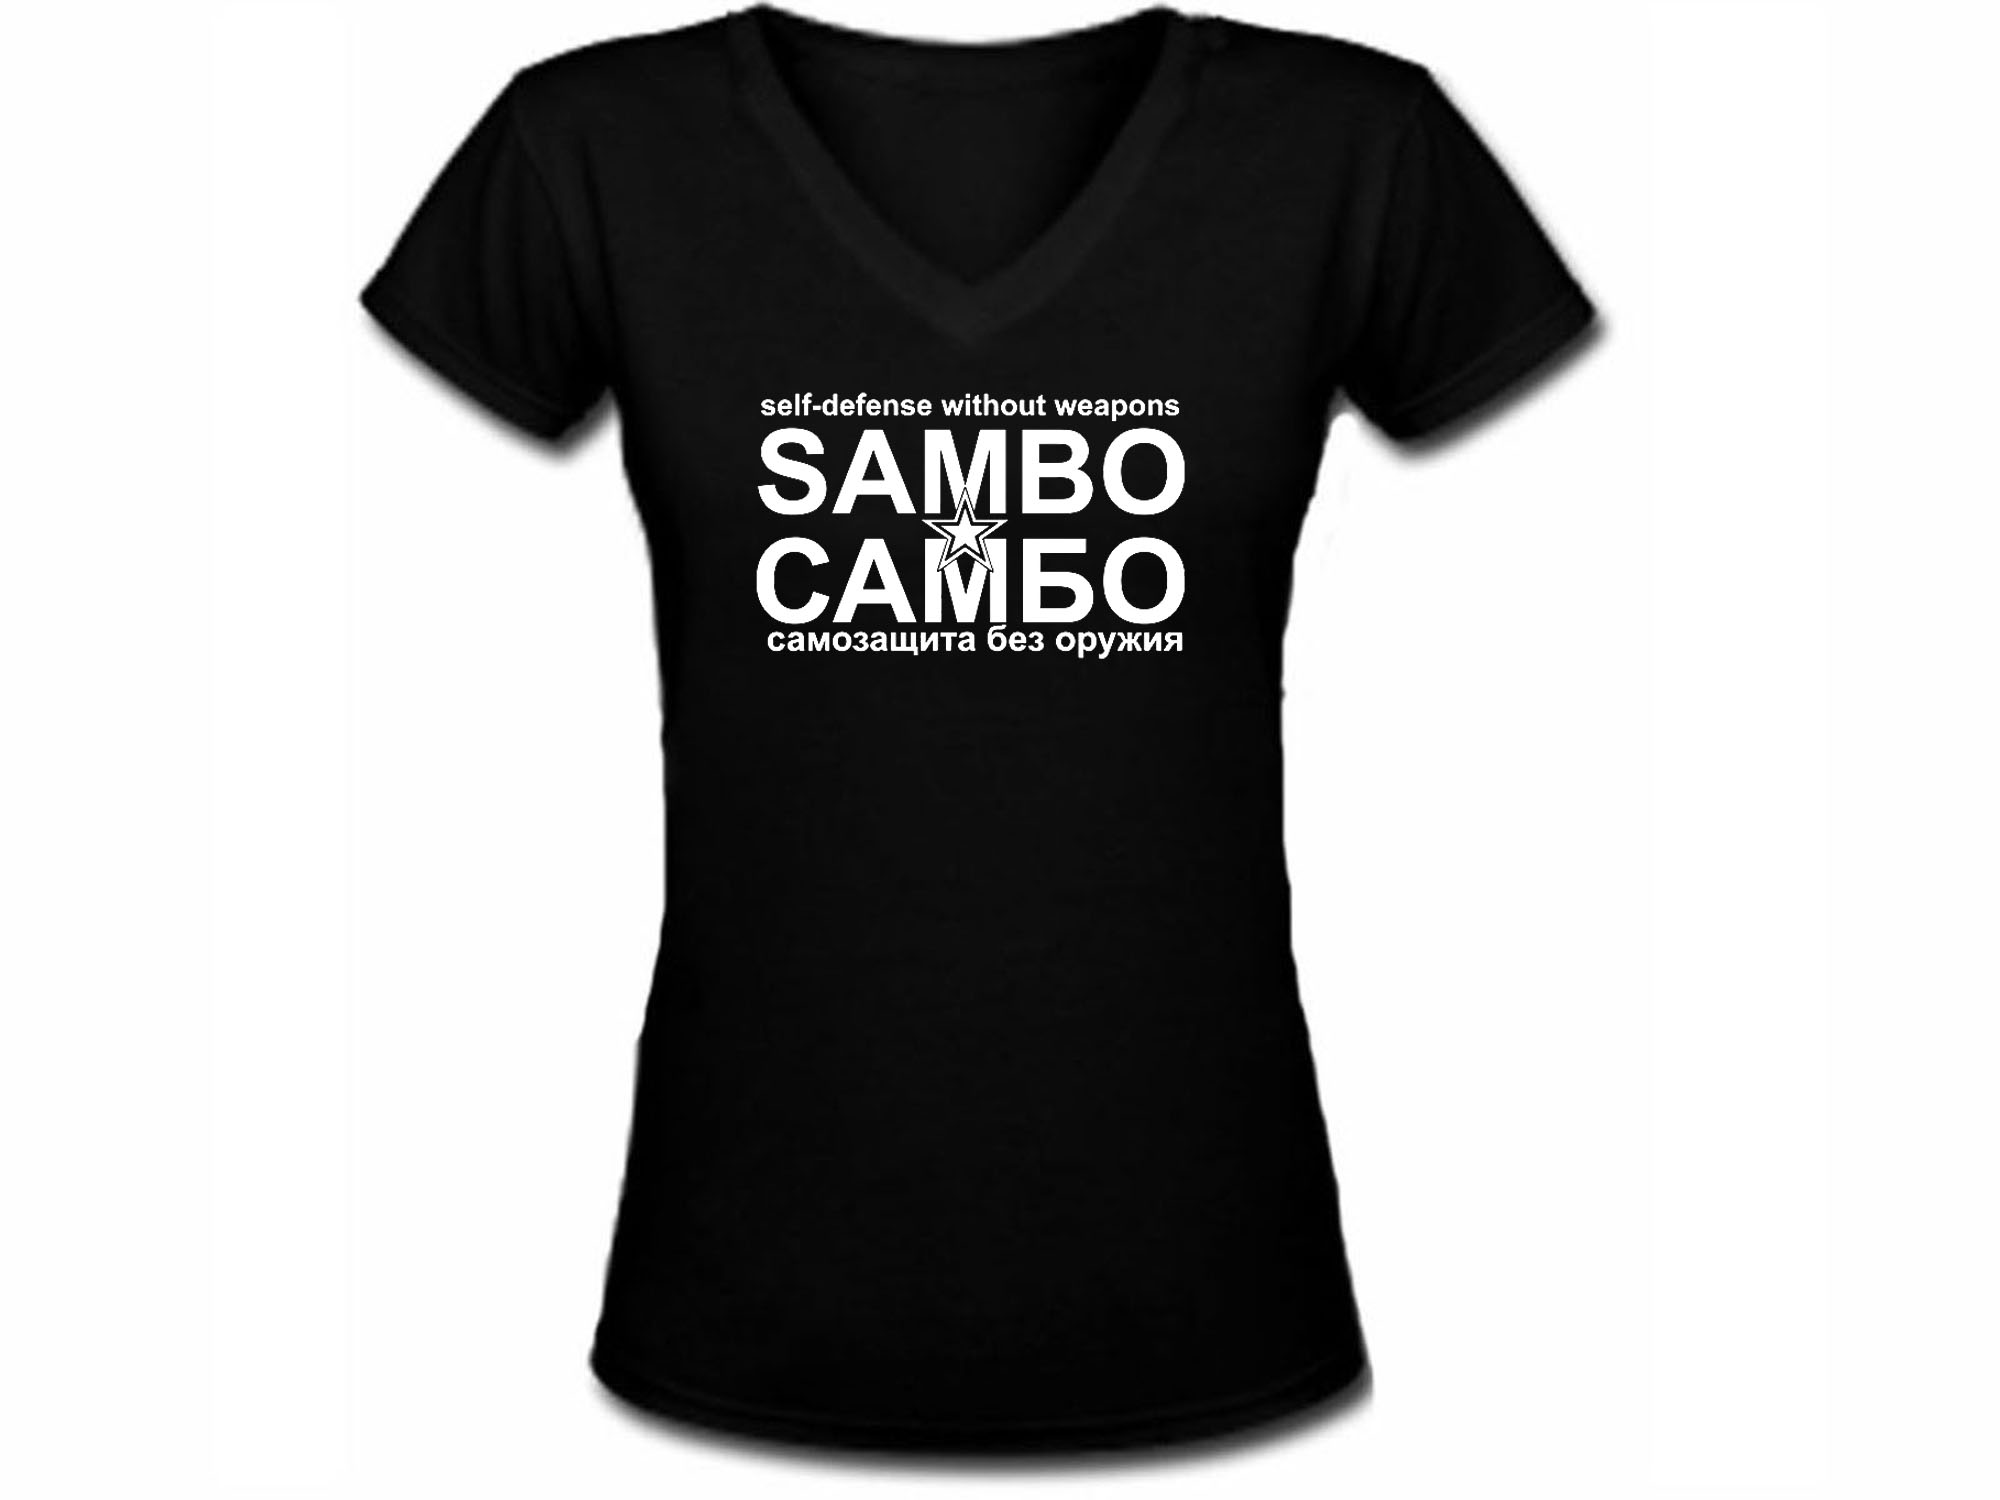 Sambo cambo women t-shirt